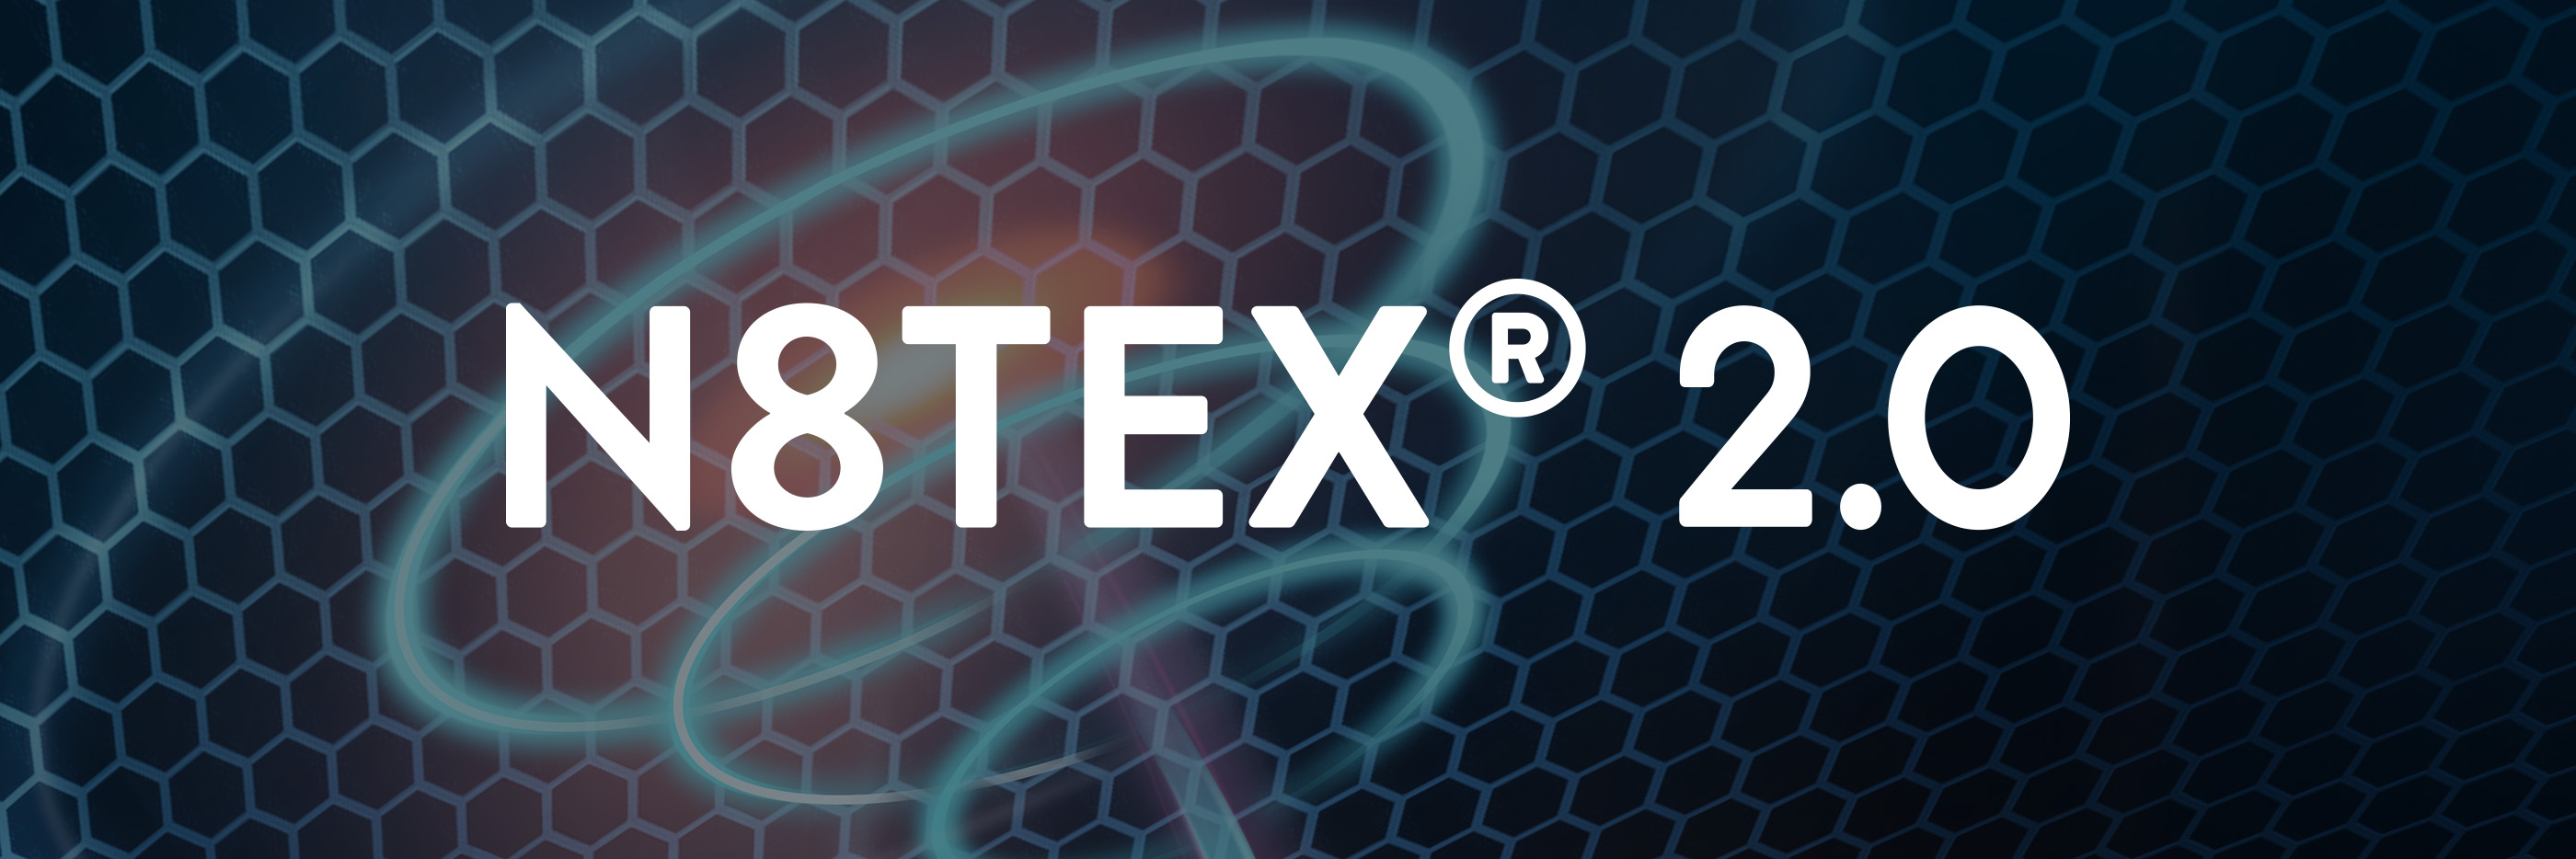 N8TEX®2.0-logo op de achtergrond van de afbeelding met het volledige spectrum infraroodenergie | mey® 